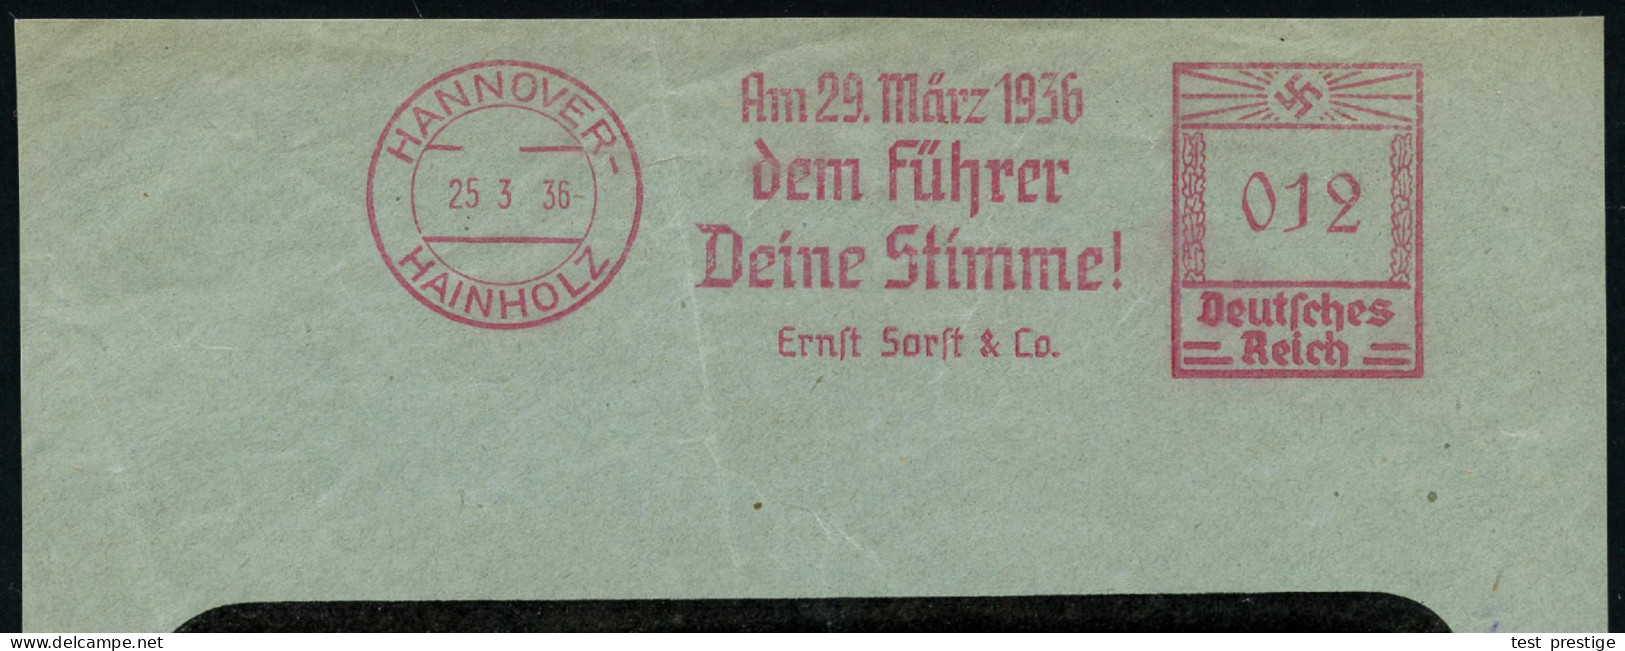 HANNOVER-/ HAINHOLZ/ Am 29.März 1936/ Dem Führer/ Deine Stimme!/ Ernst Sorft & Co. 1936 (25.3.) Sehr Seltener AFS Franco - Andere